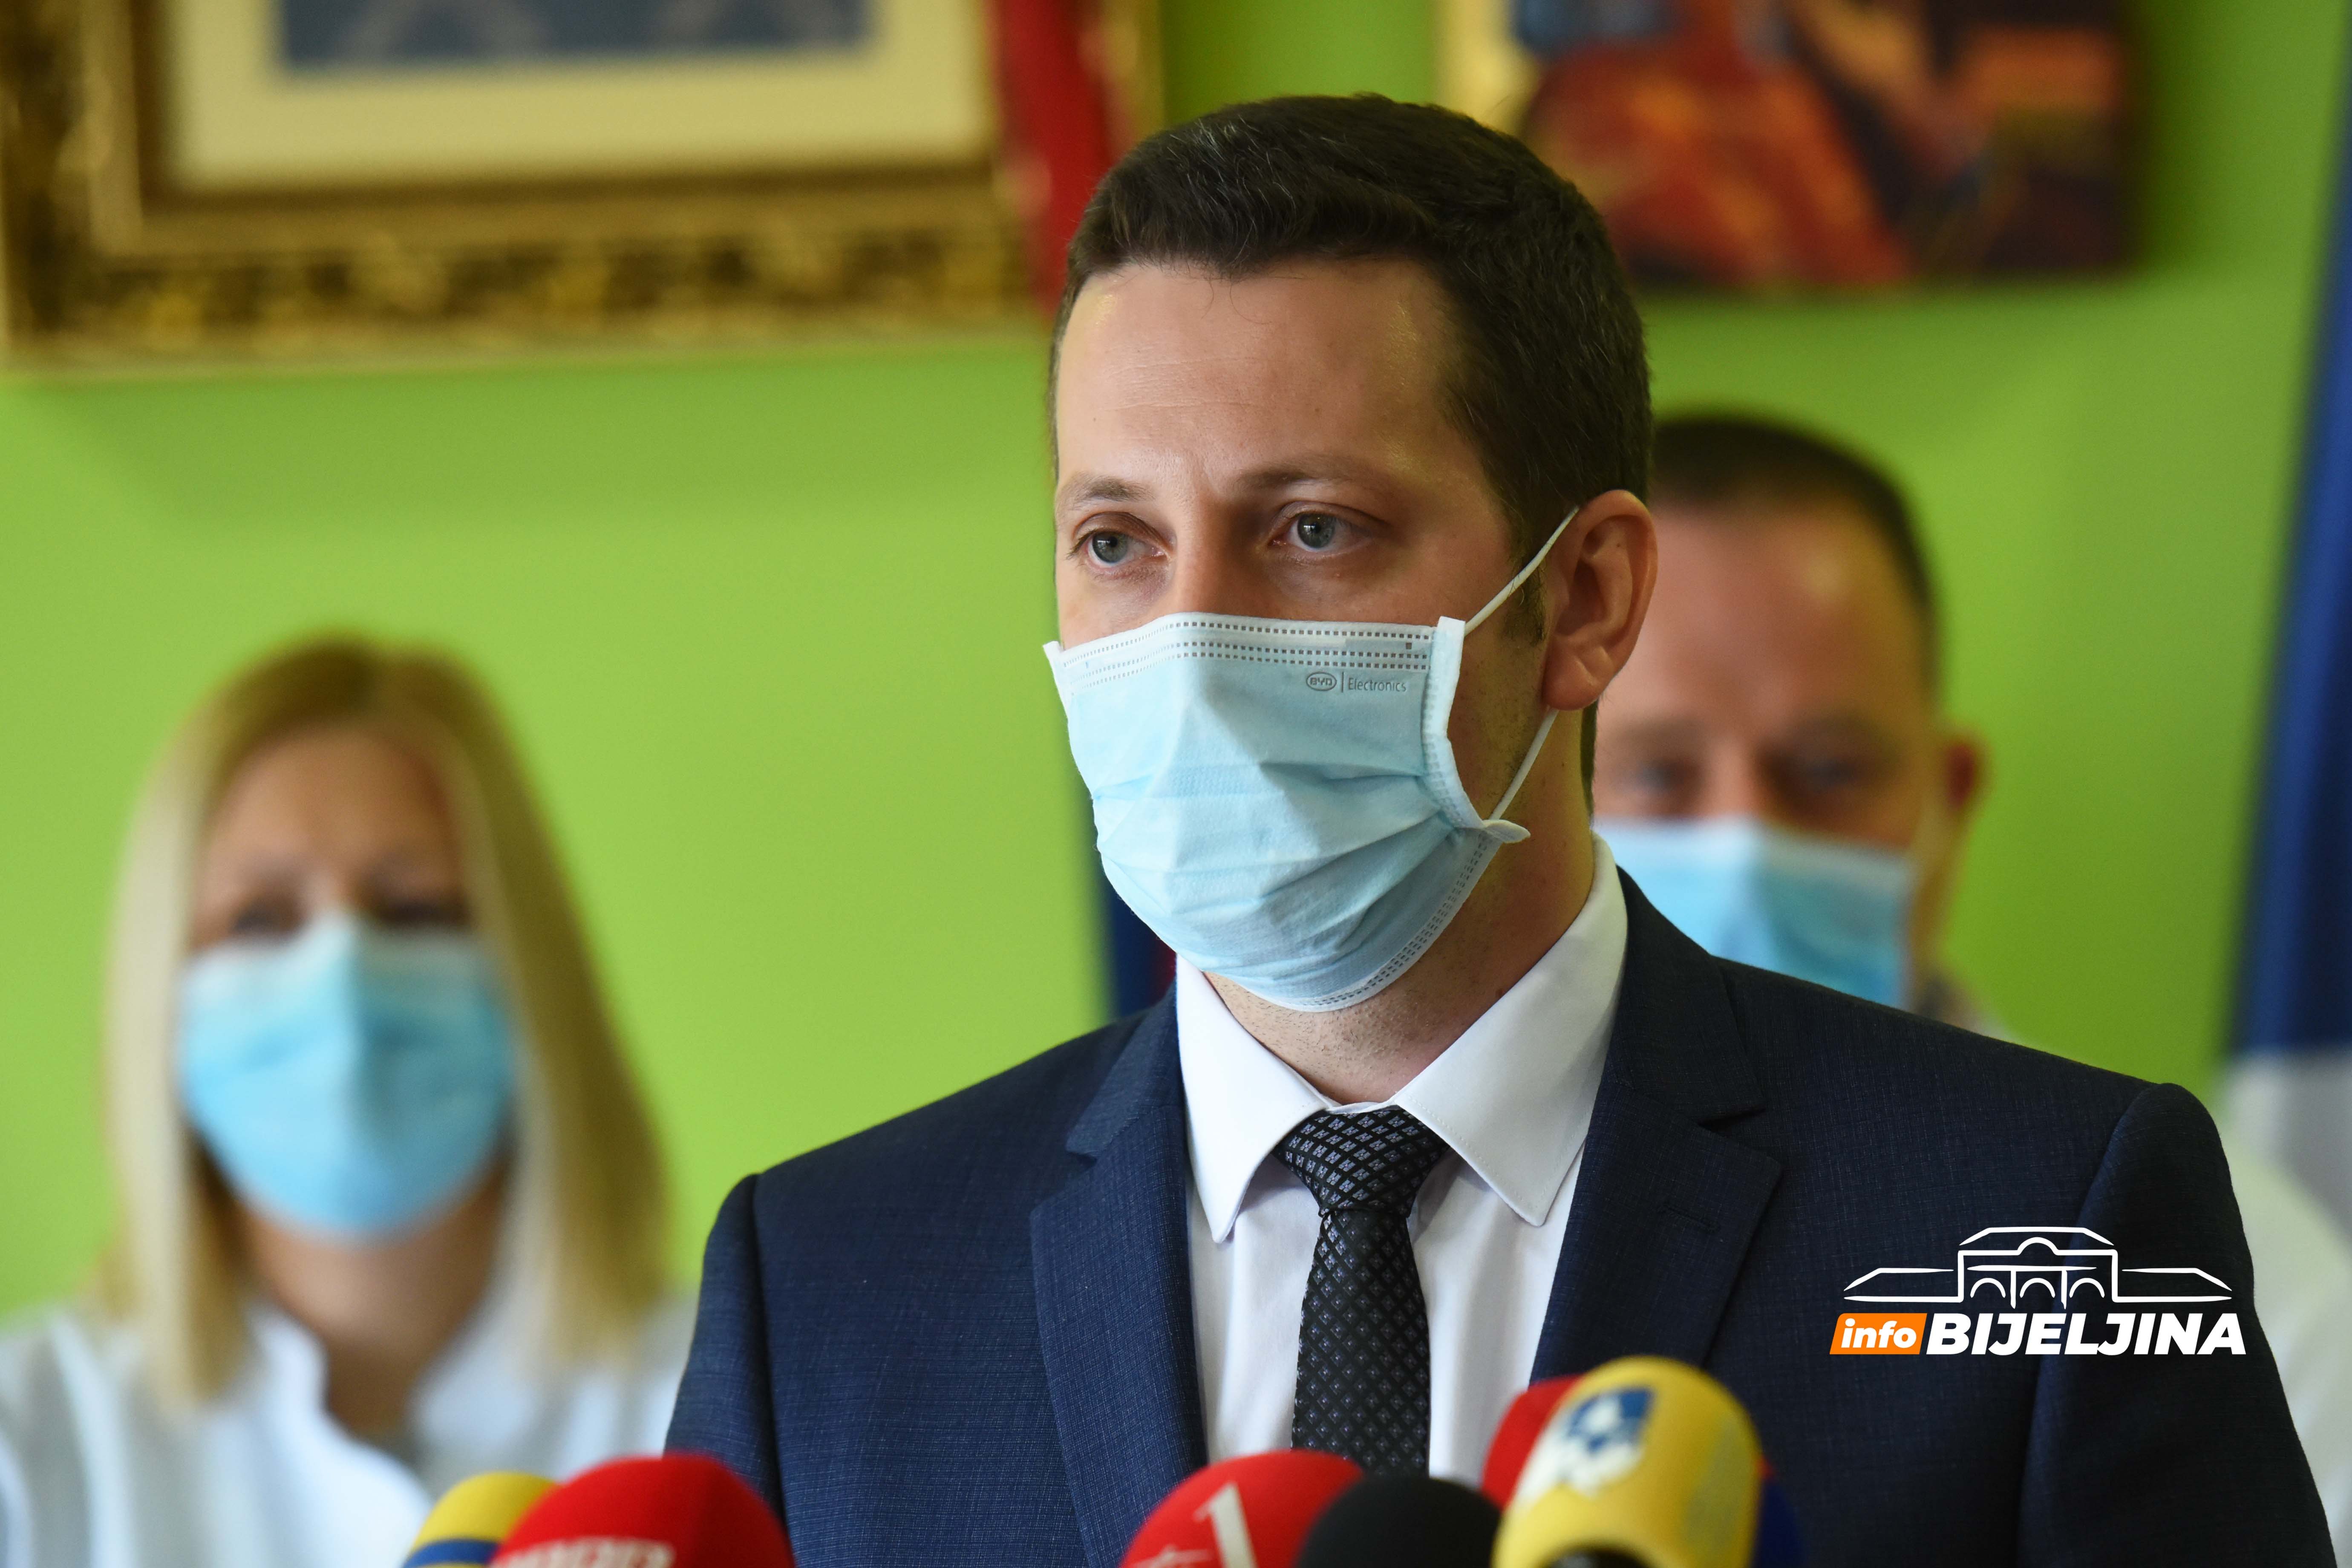 Zeljković: Epidemiološke mjere dale rezultate